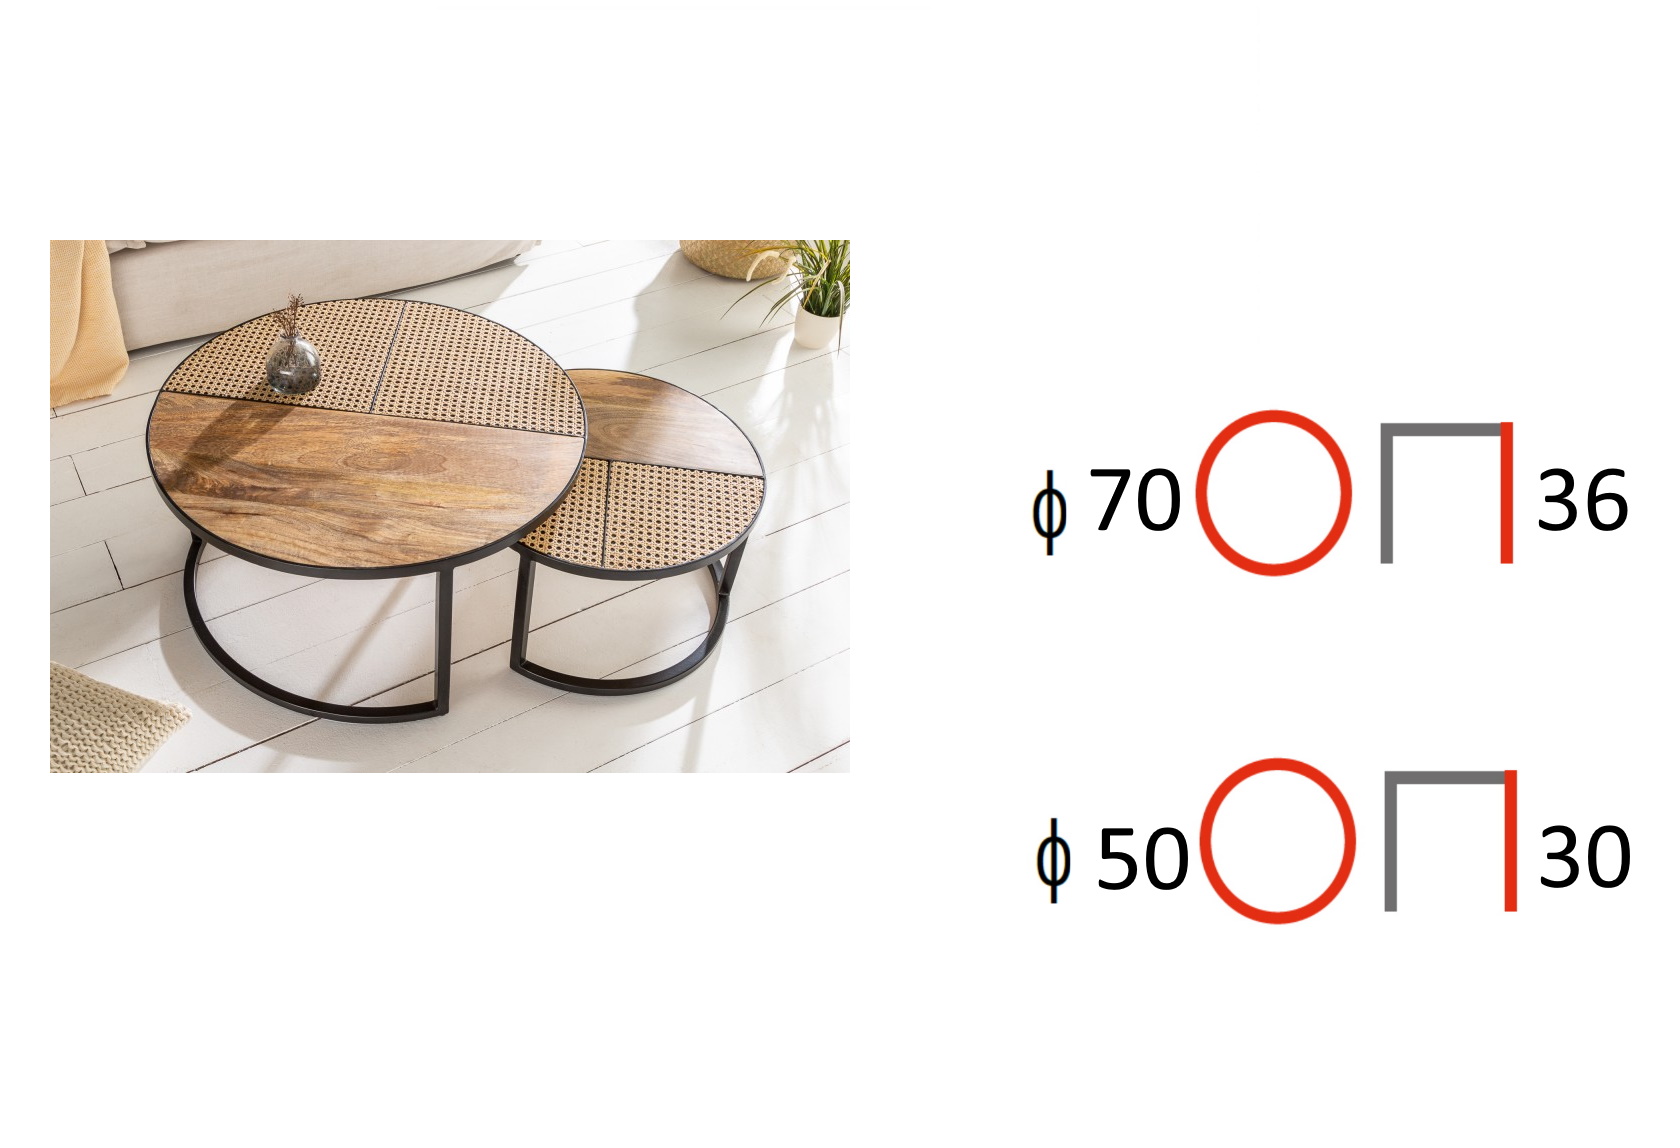 zestaw dwóch okrągłych stolików z drewna i rattanu vienna round, wymiary stolików